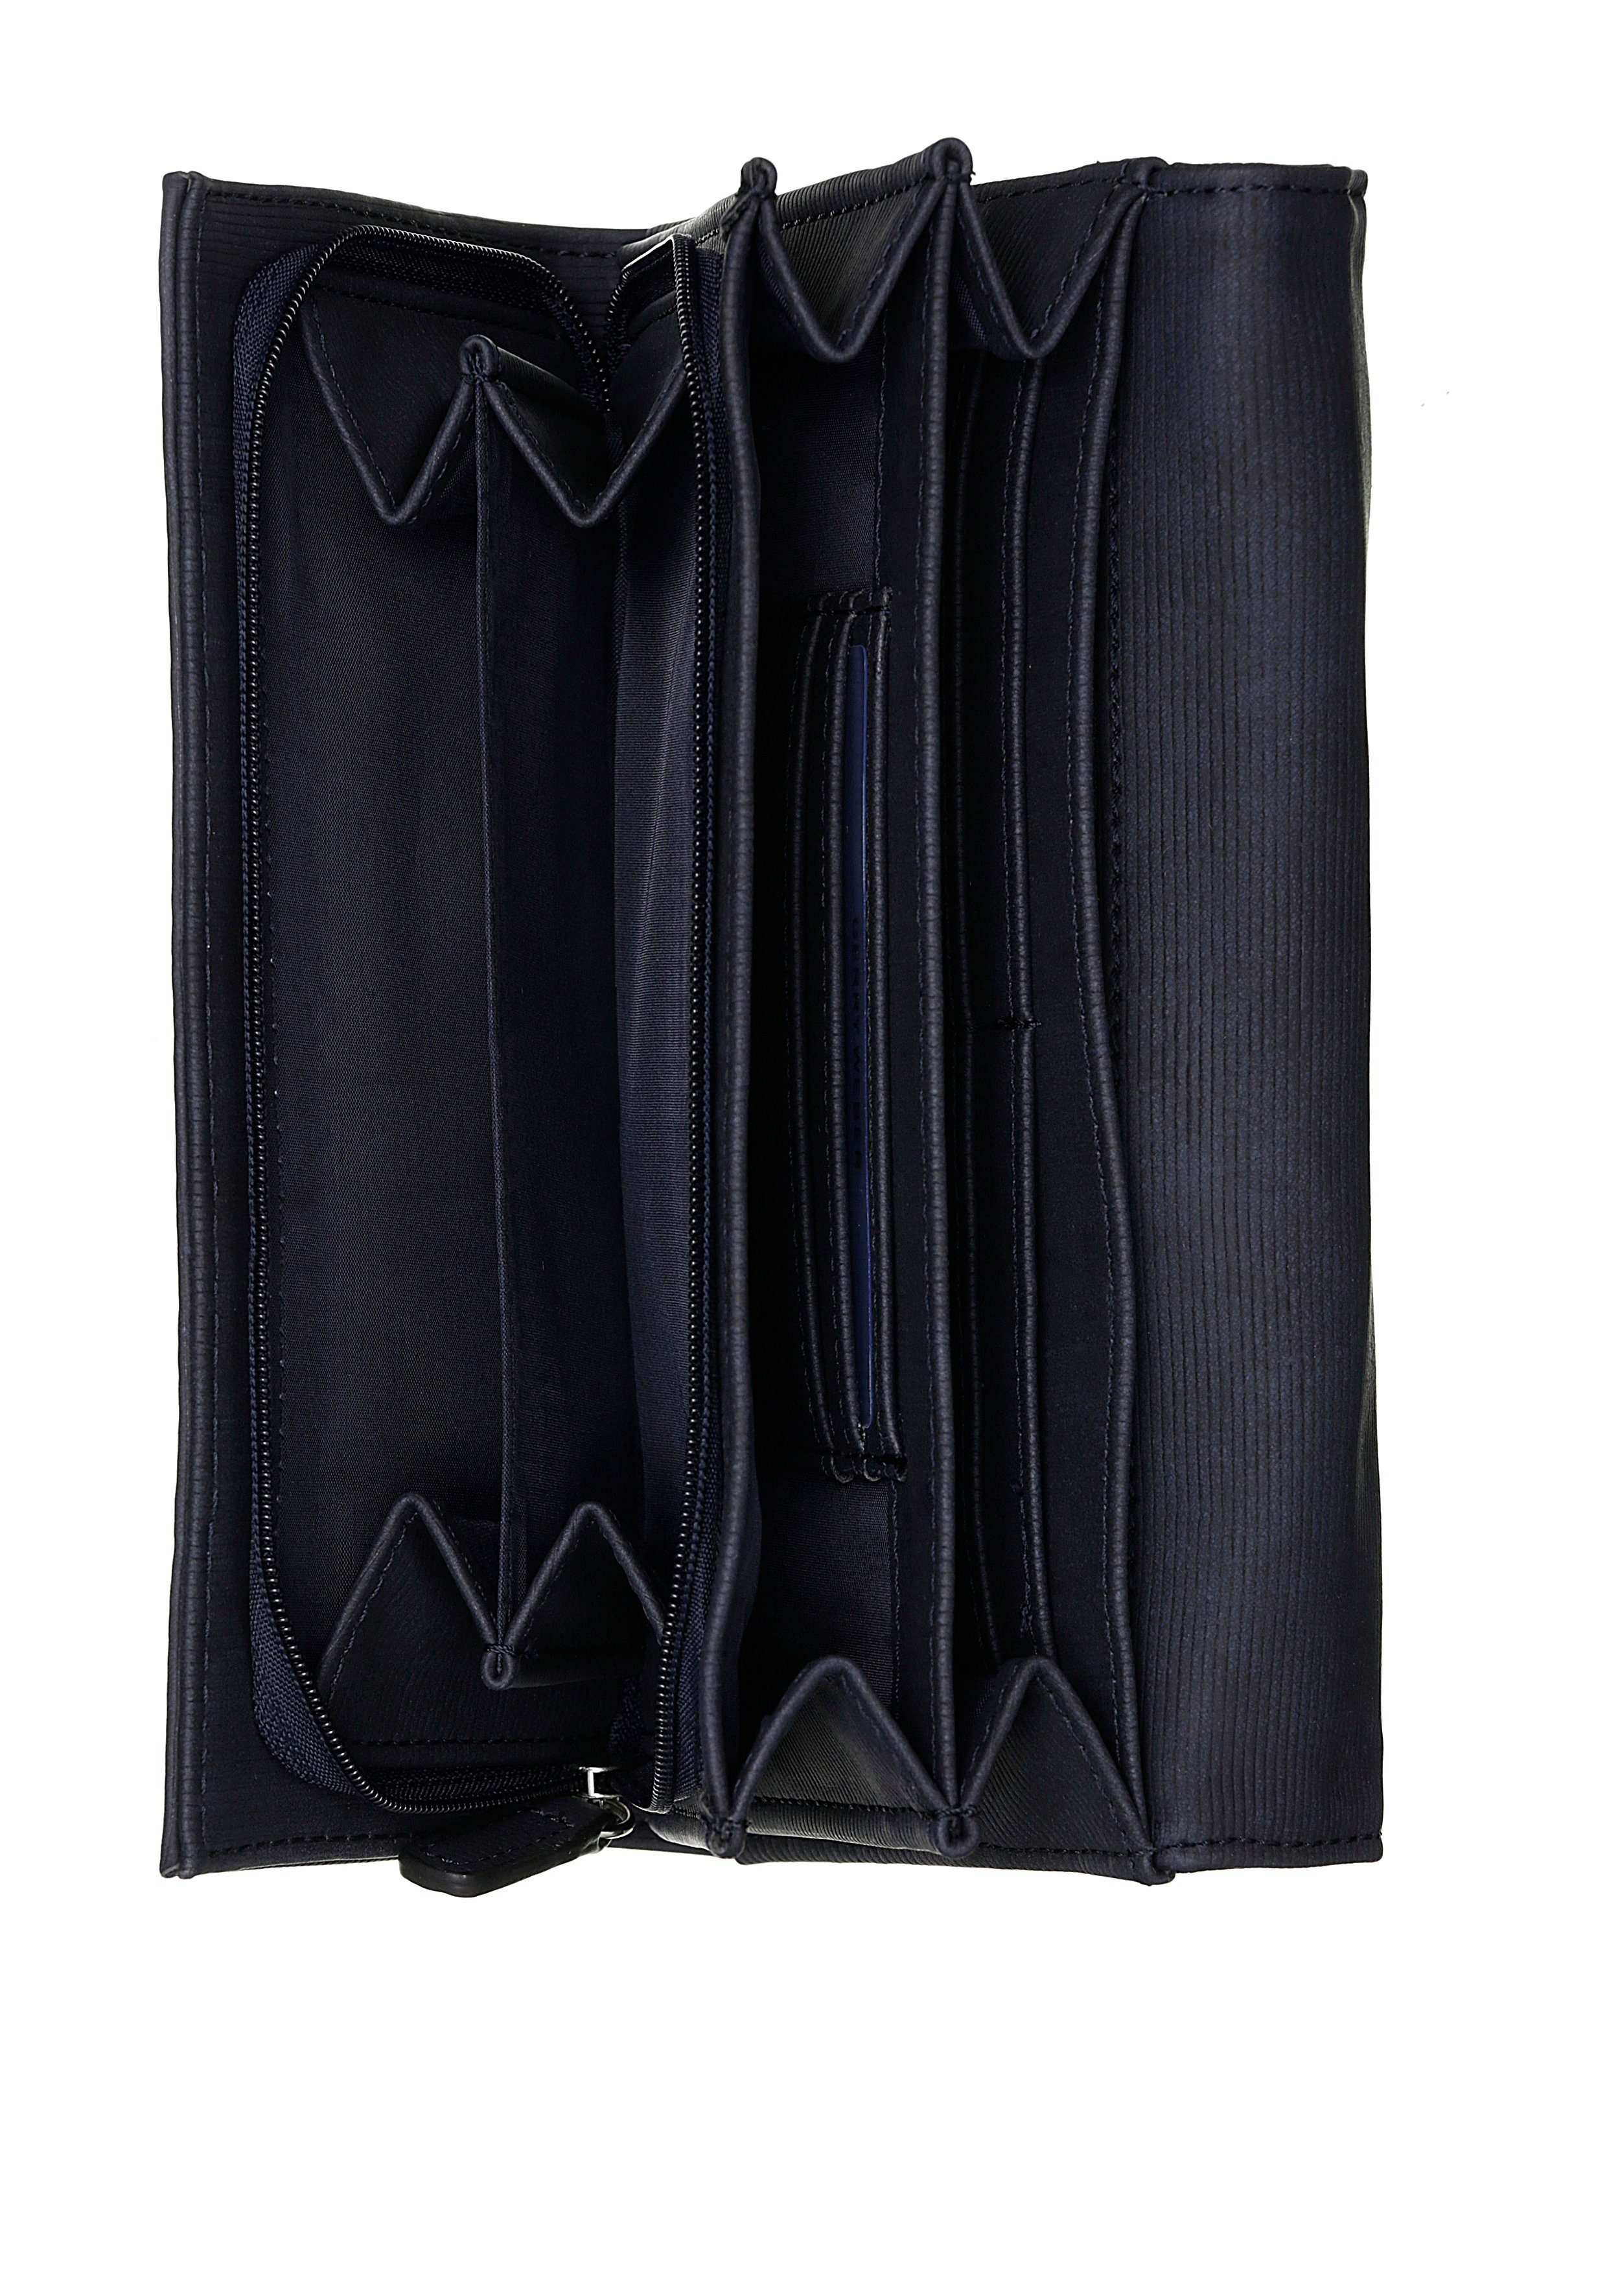 GERRY Bags Geldbörse WEBER lh9f, dunkelblau praktischer be Einteilung different purse mit